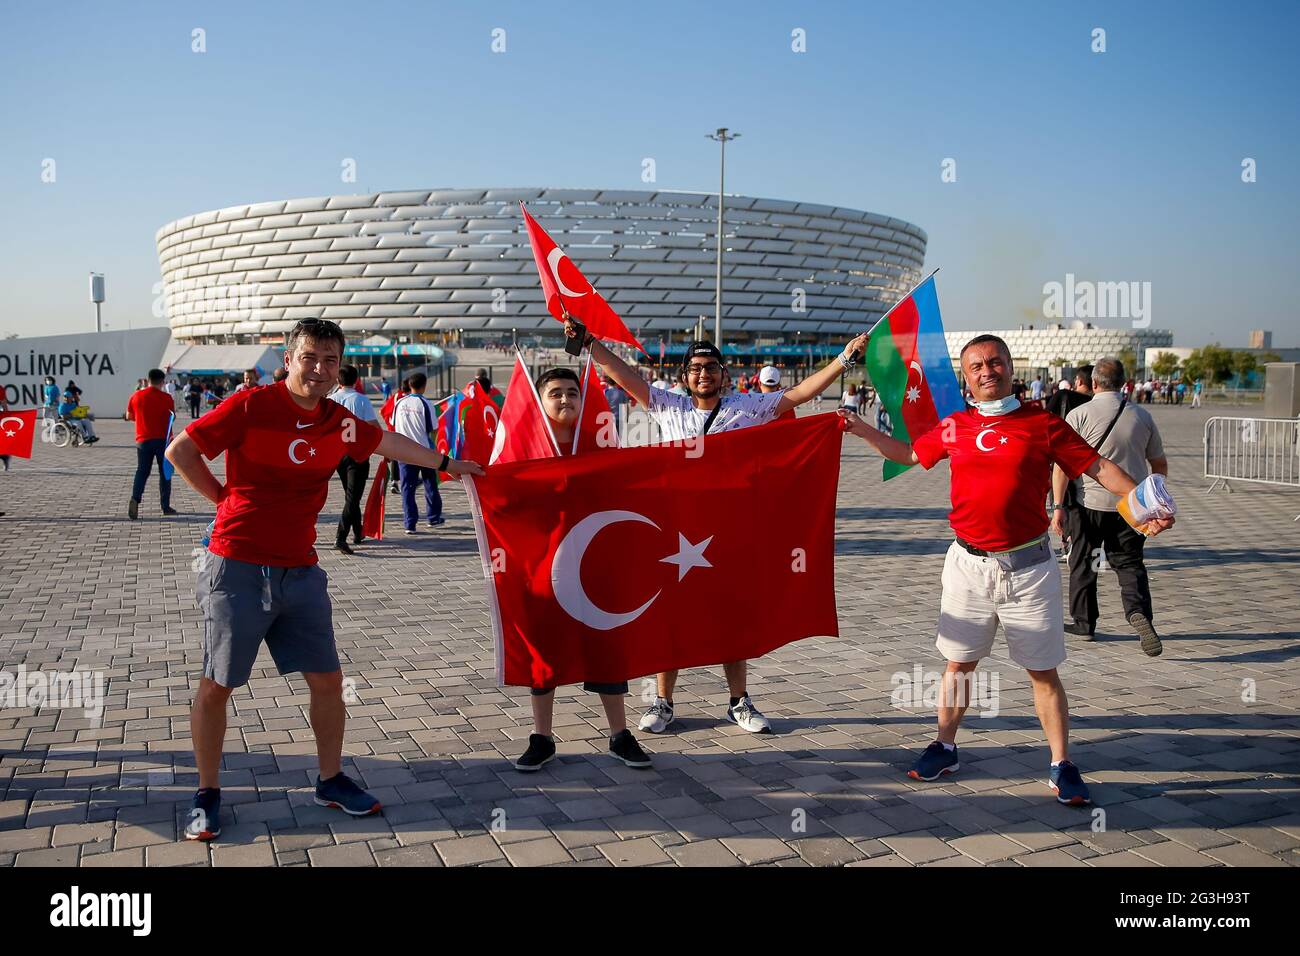 Tifosi turchi fuori terra davanti alla partita UEFA Euro 2020 Gruppo A allo Stadio Olimpico di Baku in Azerbaigian. Data immagine: Mercoledì 16 giugno 2021. Foto Stock